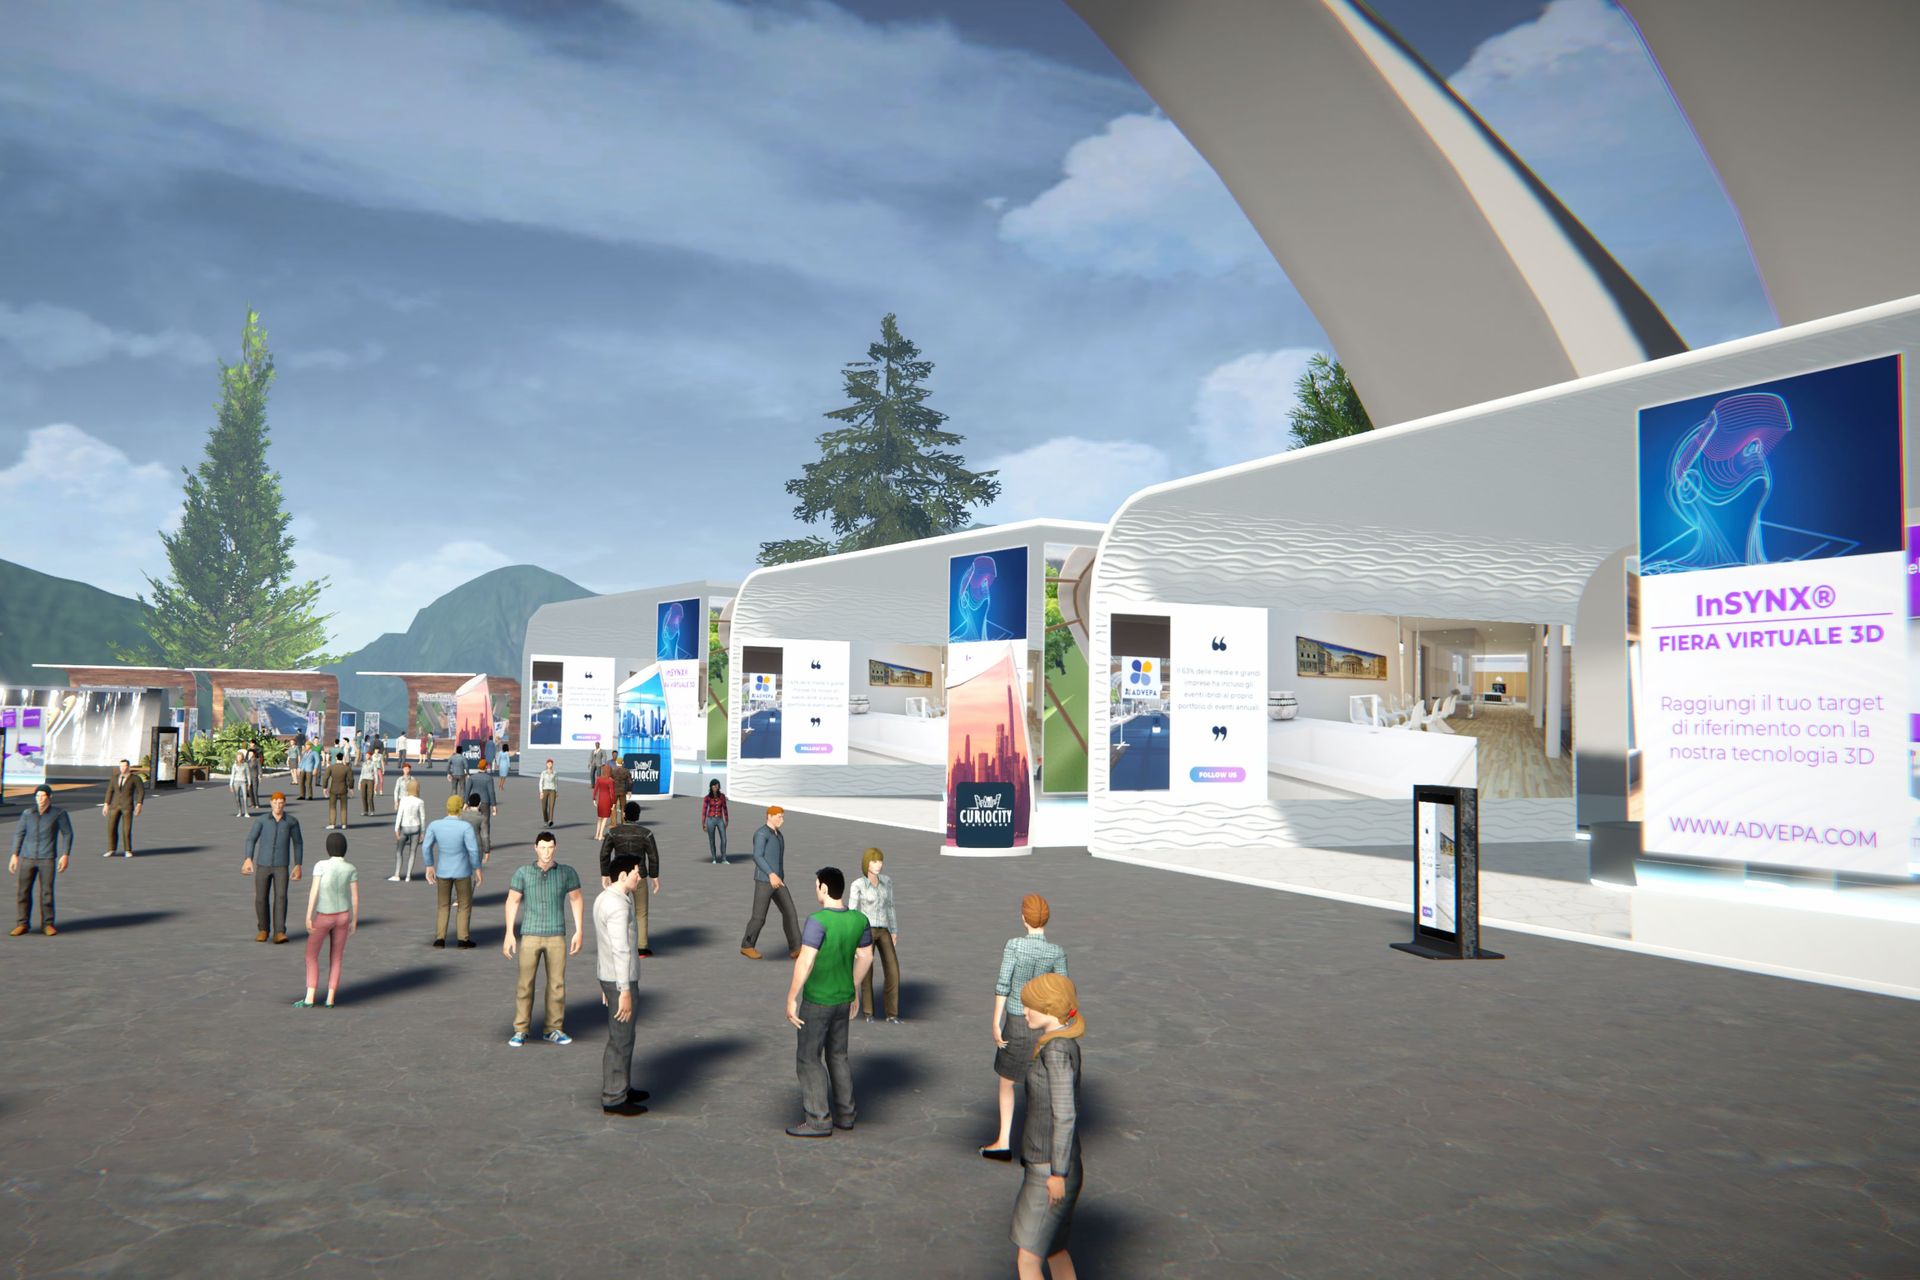 منطقة مفتوحة لـ "Swiss Digital Expo" حيث يتجول الجمهور بين المدرجات